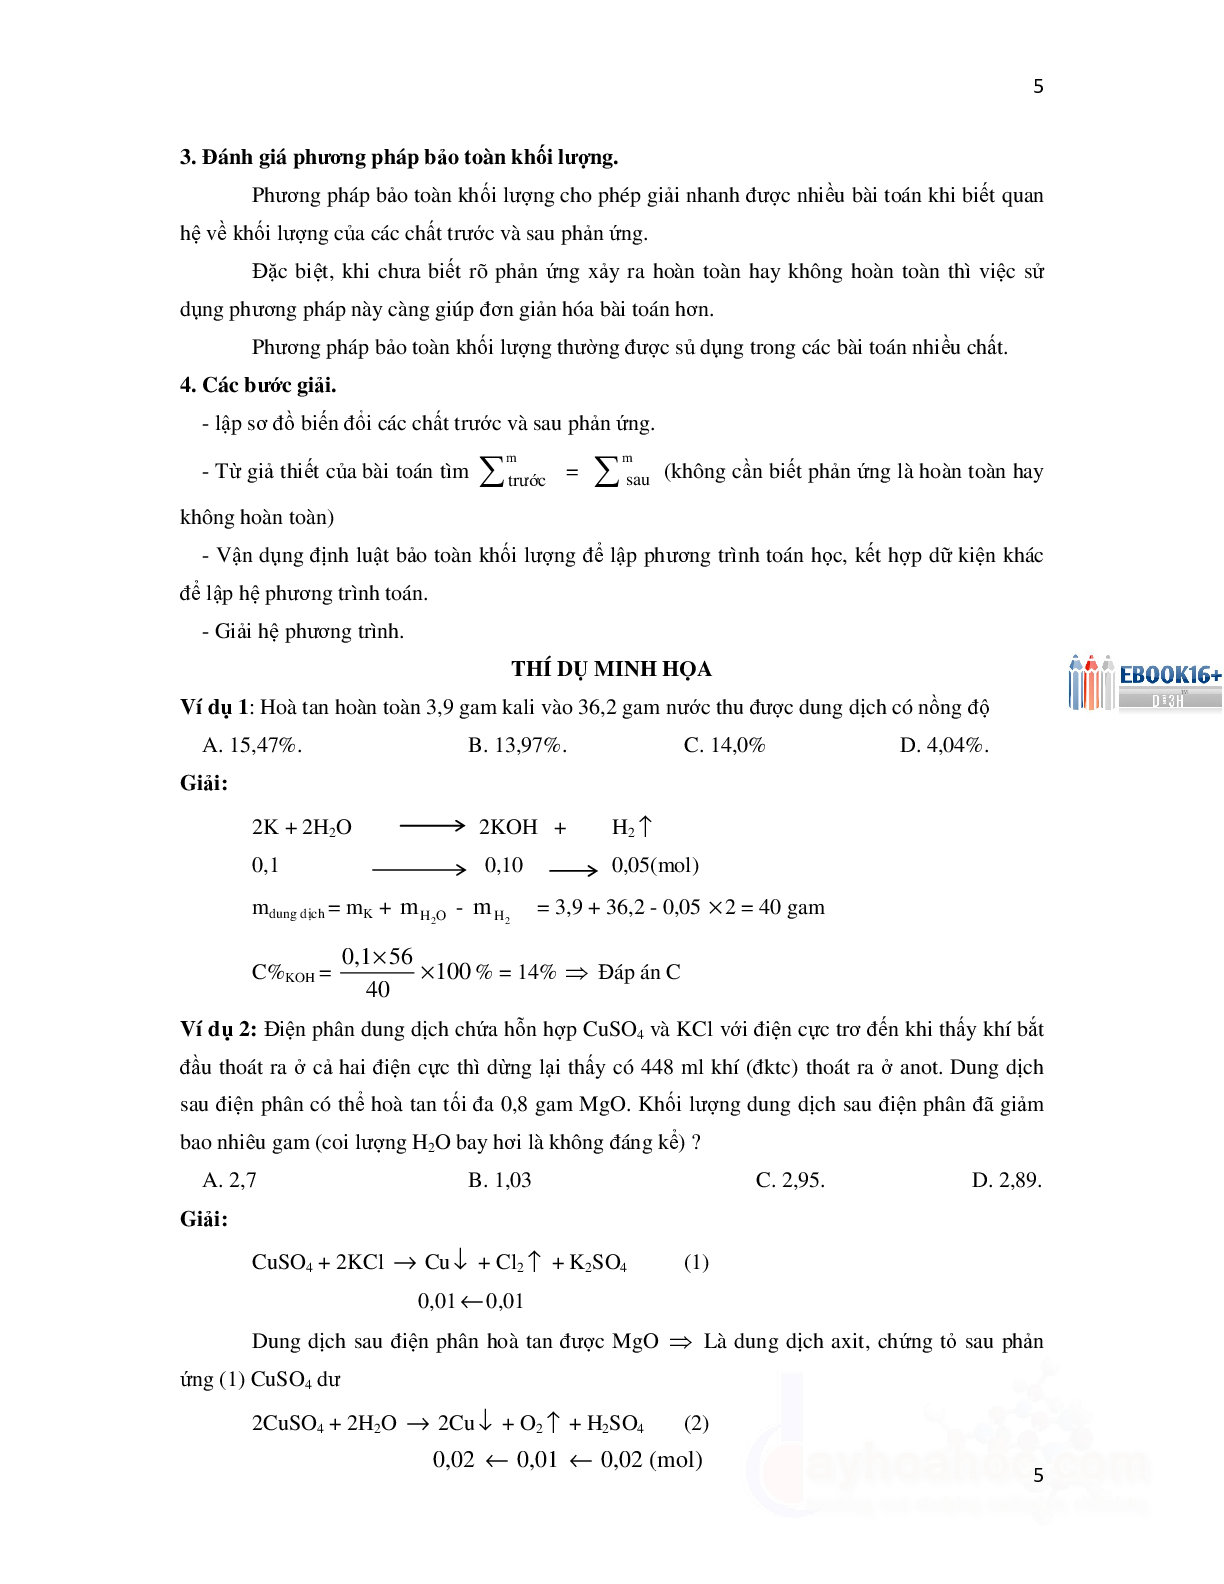 16 phương pháp giải nhanh trắc nghiệm hóa học có đáp án (trang 5)